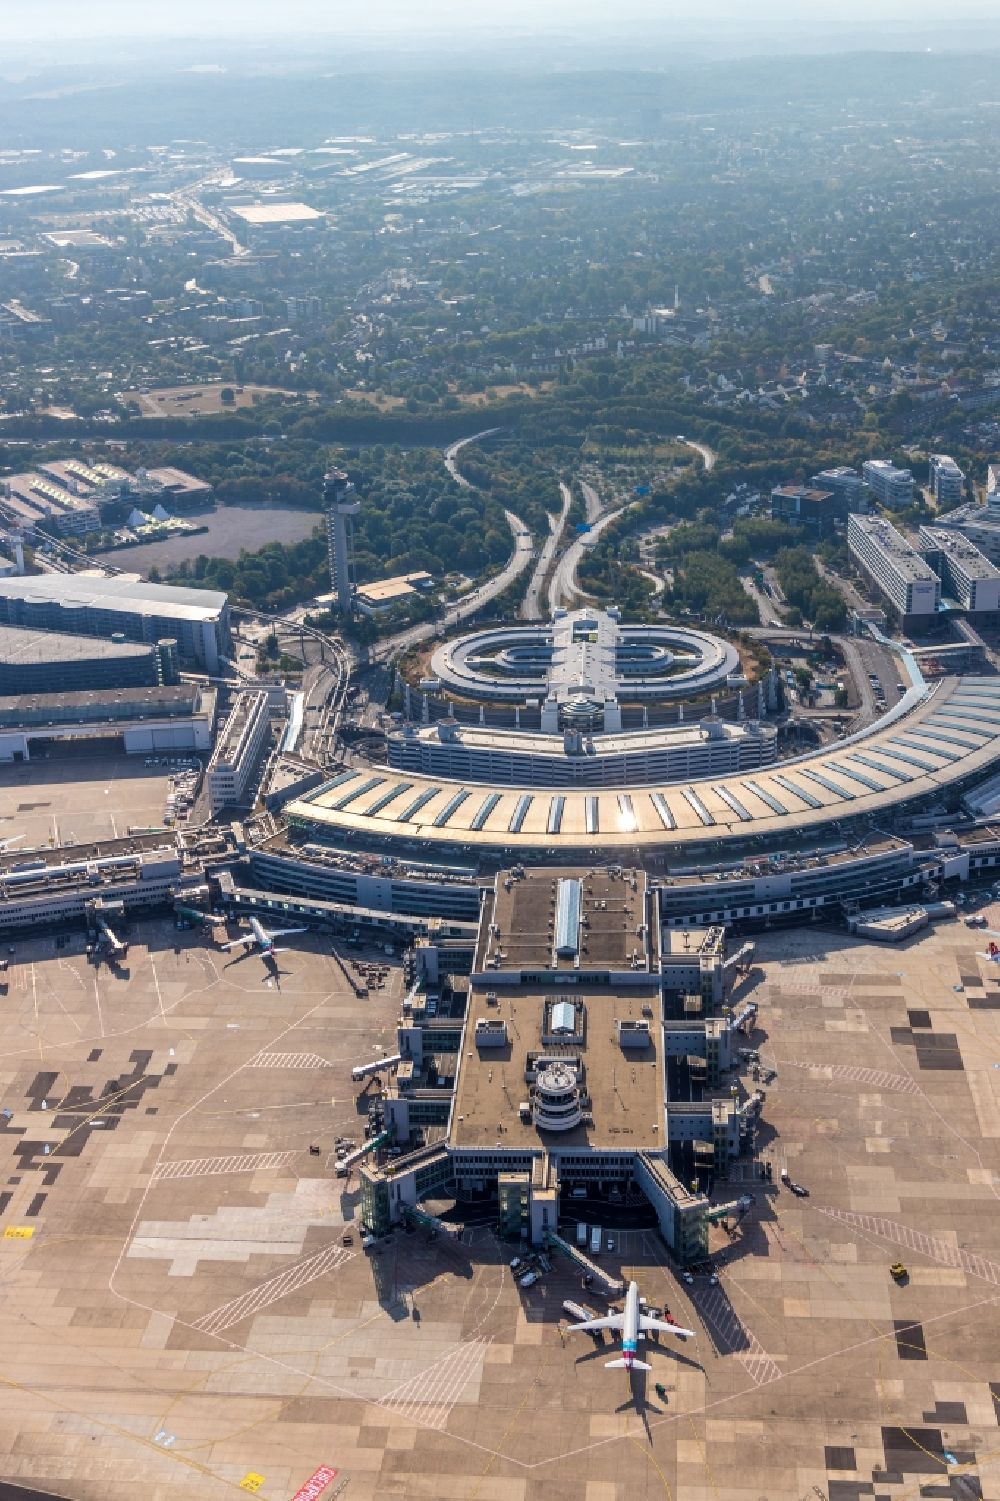 Luftbild Düsseldorf - Abfertigungs- Gebäude und Terminals auf dem Gelände des Flughafen in Düsseldorf im Bundesland Nordrhein-Westfalen, Deutschland